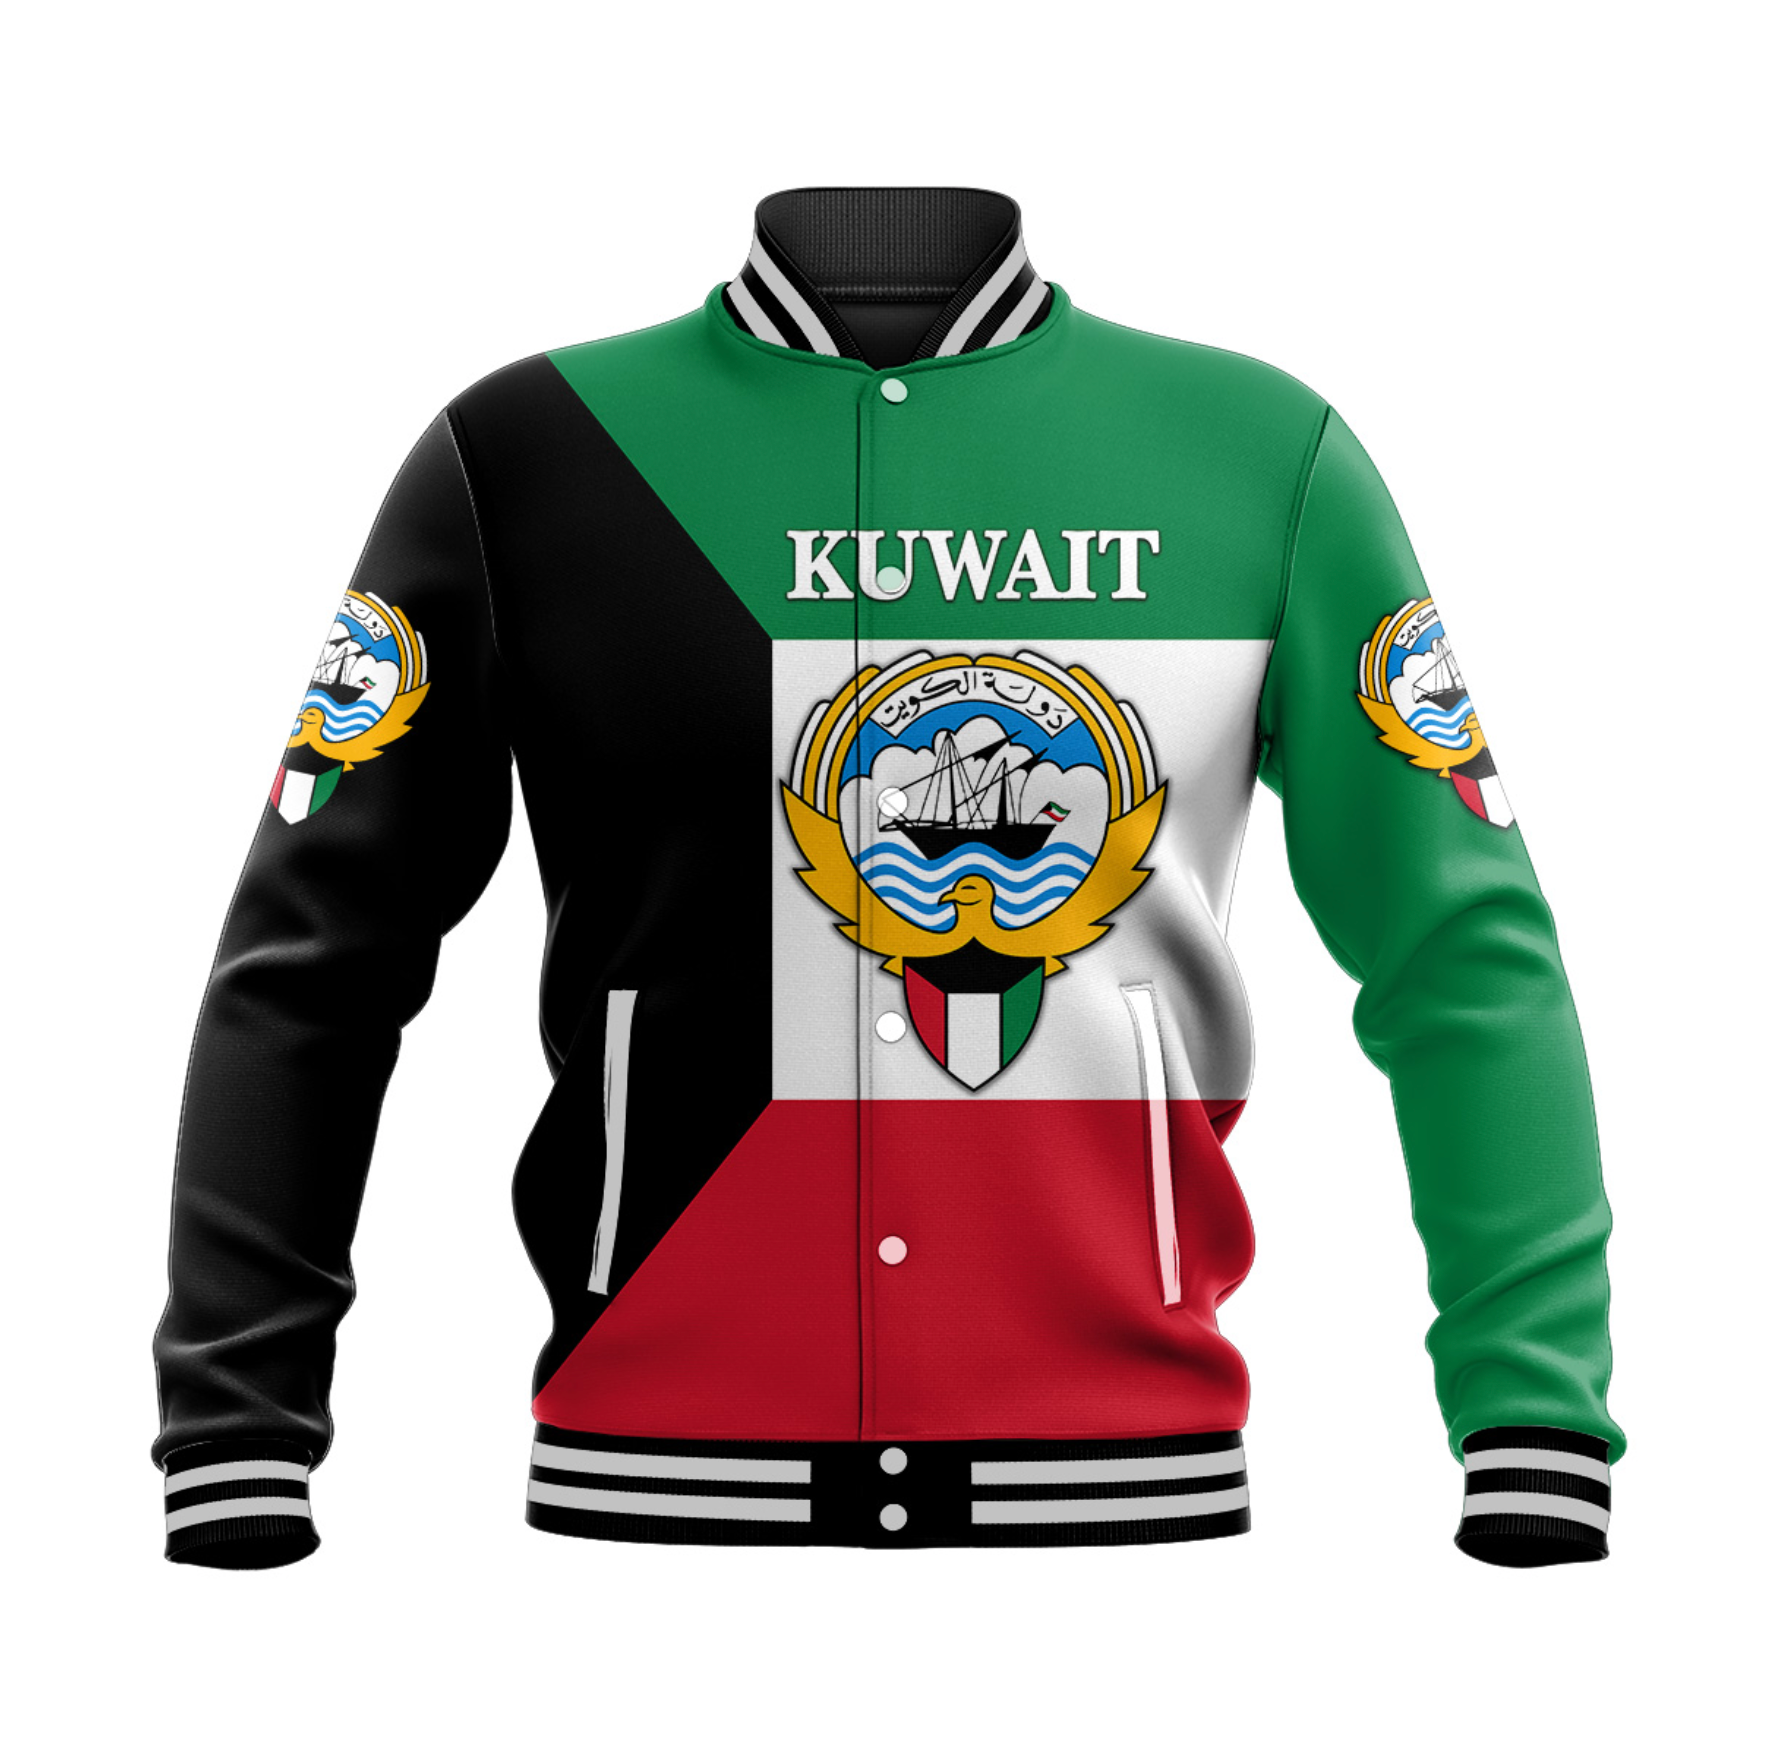 kuwait-baseball-jacket-flag-style